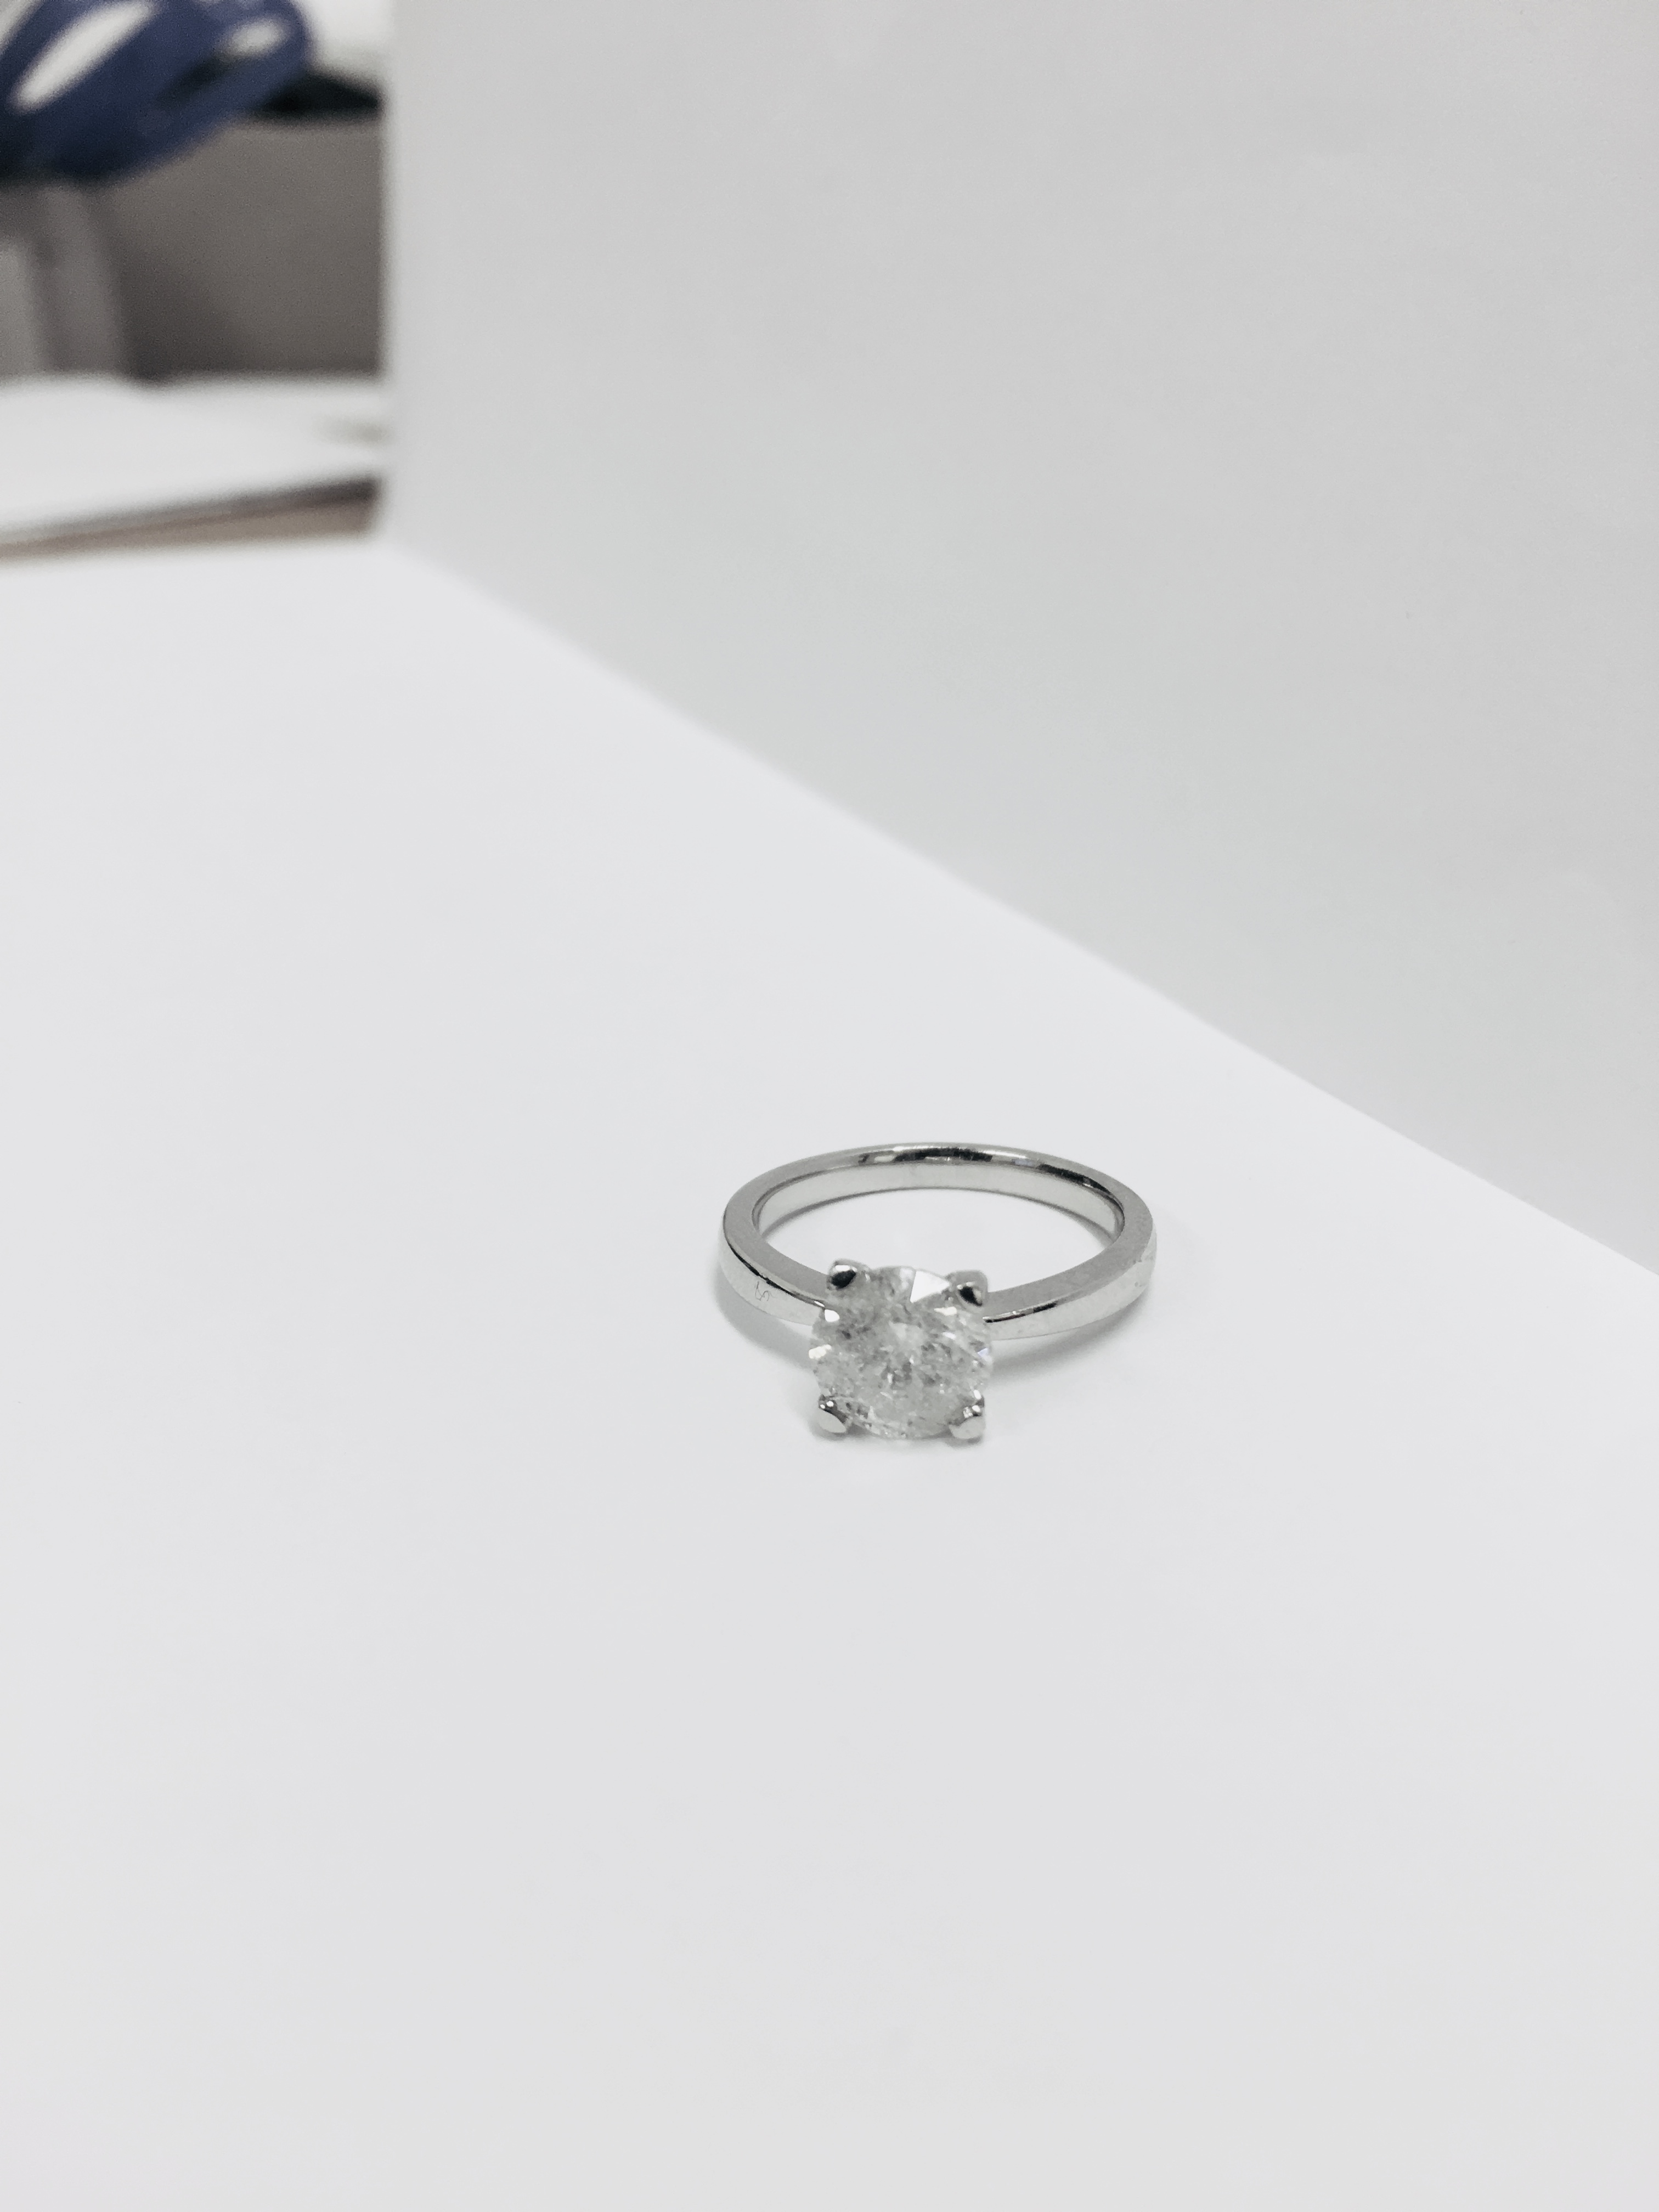 2.08ct diamond solitaire ring set in platinum - Image 12 of 48